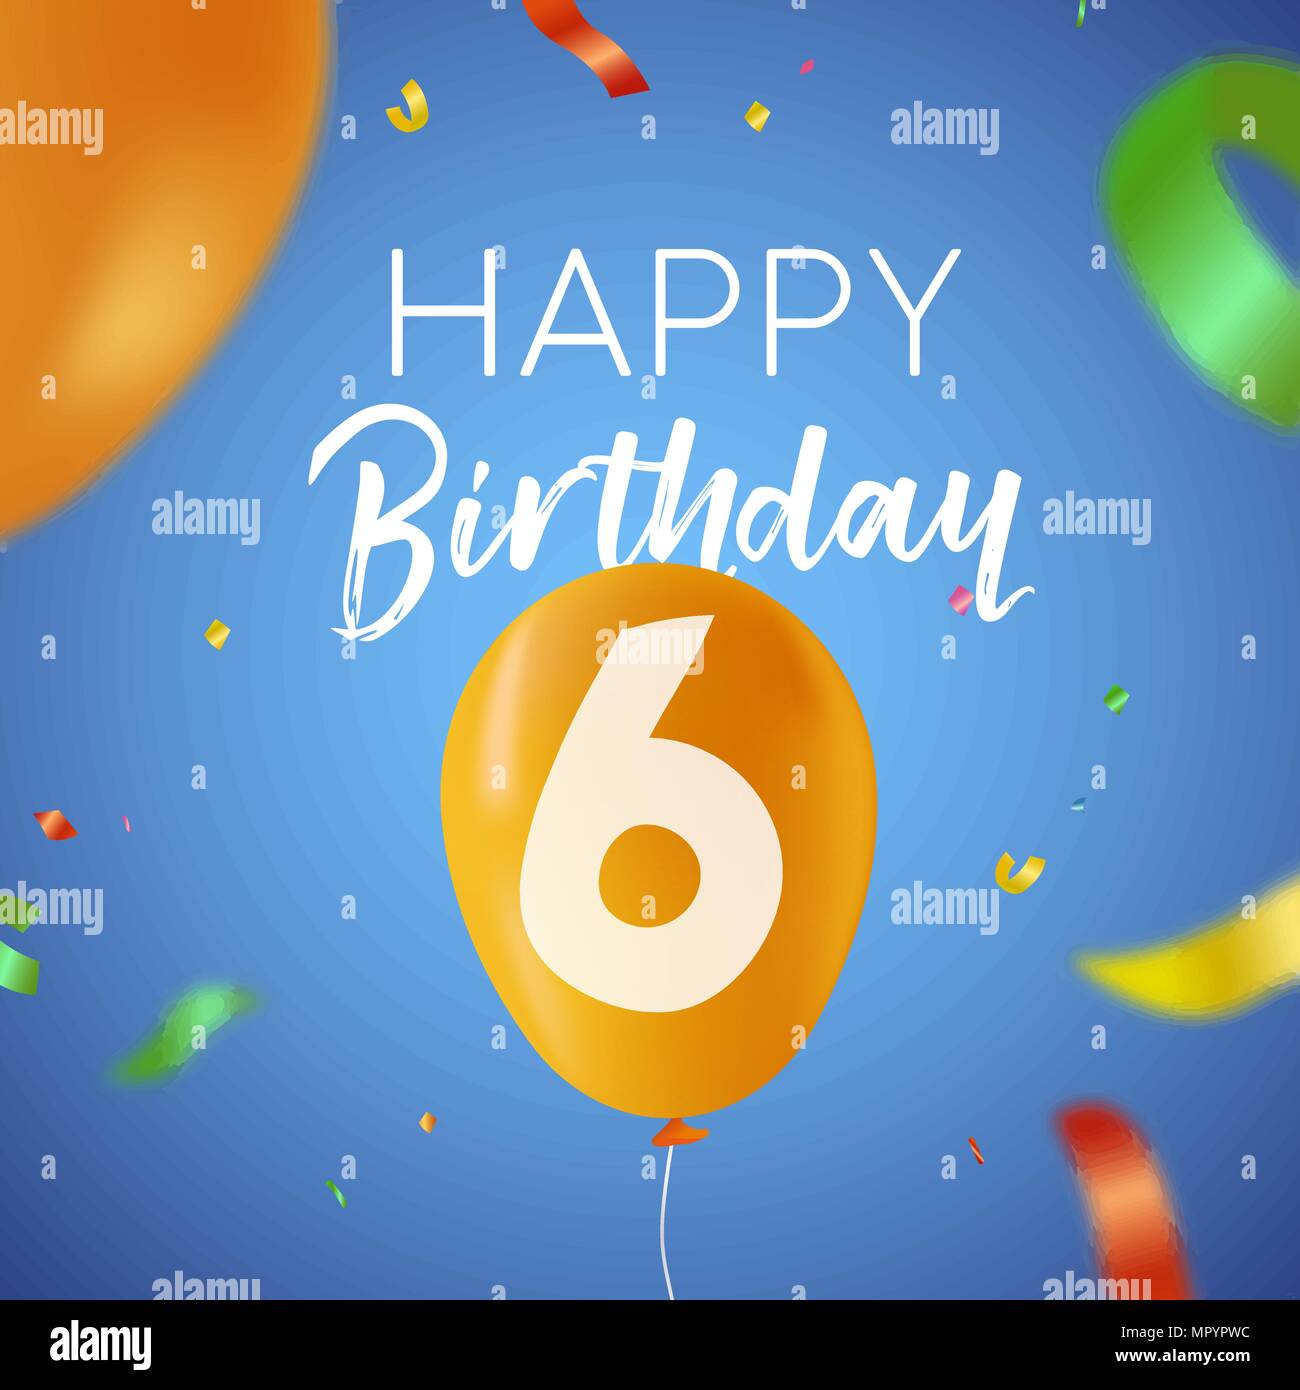 Happy Birthday 6 sechs Jahre Spaß Design mit Ballon Anzahl und bunte Konfetti Dekoration. Ideal für Party Einladung oder Grußkarte. EPS 10 Vektor. Stock Vektor